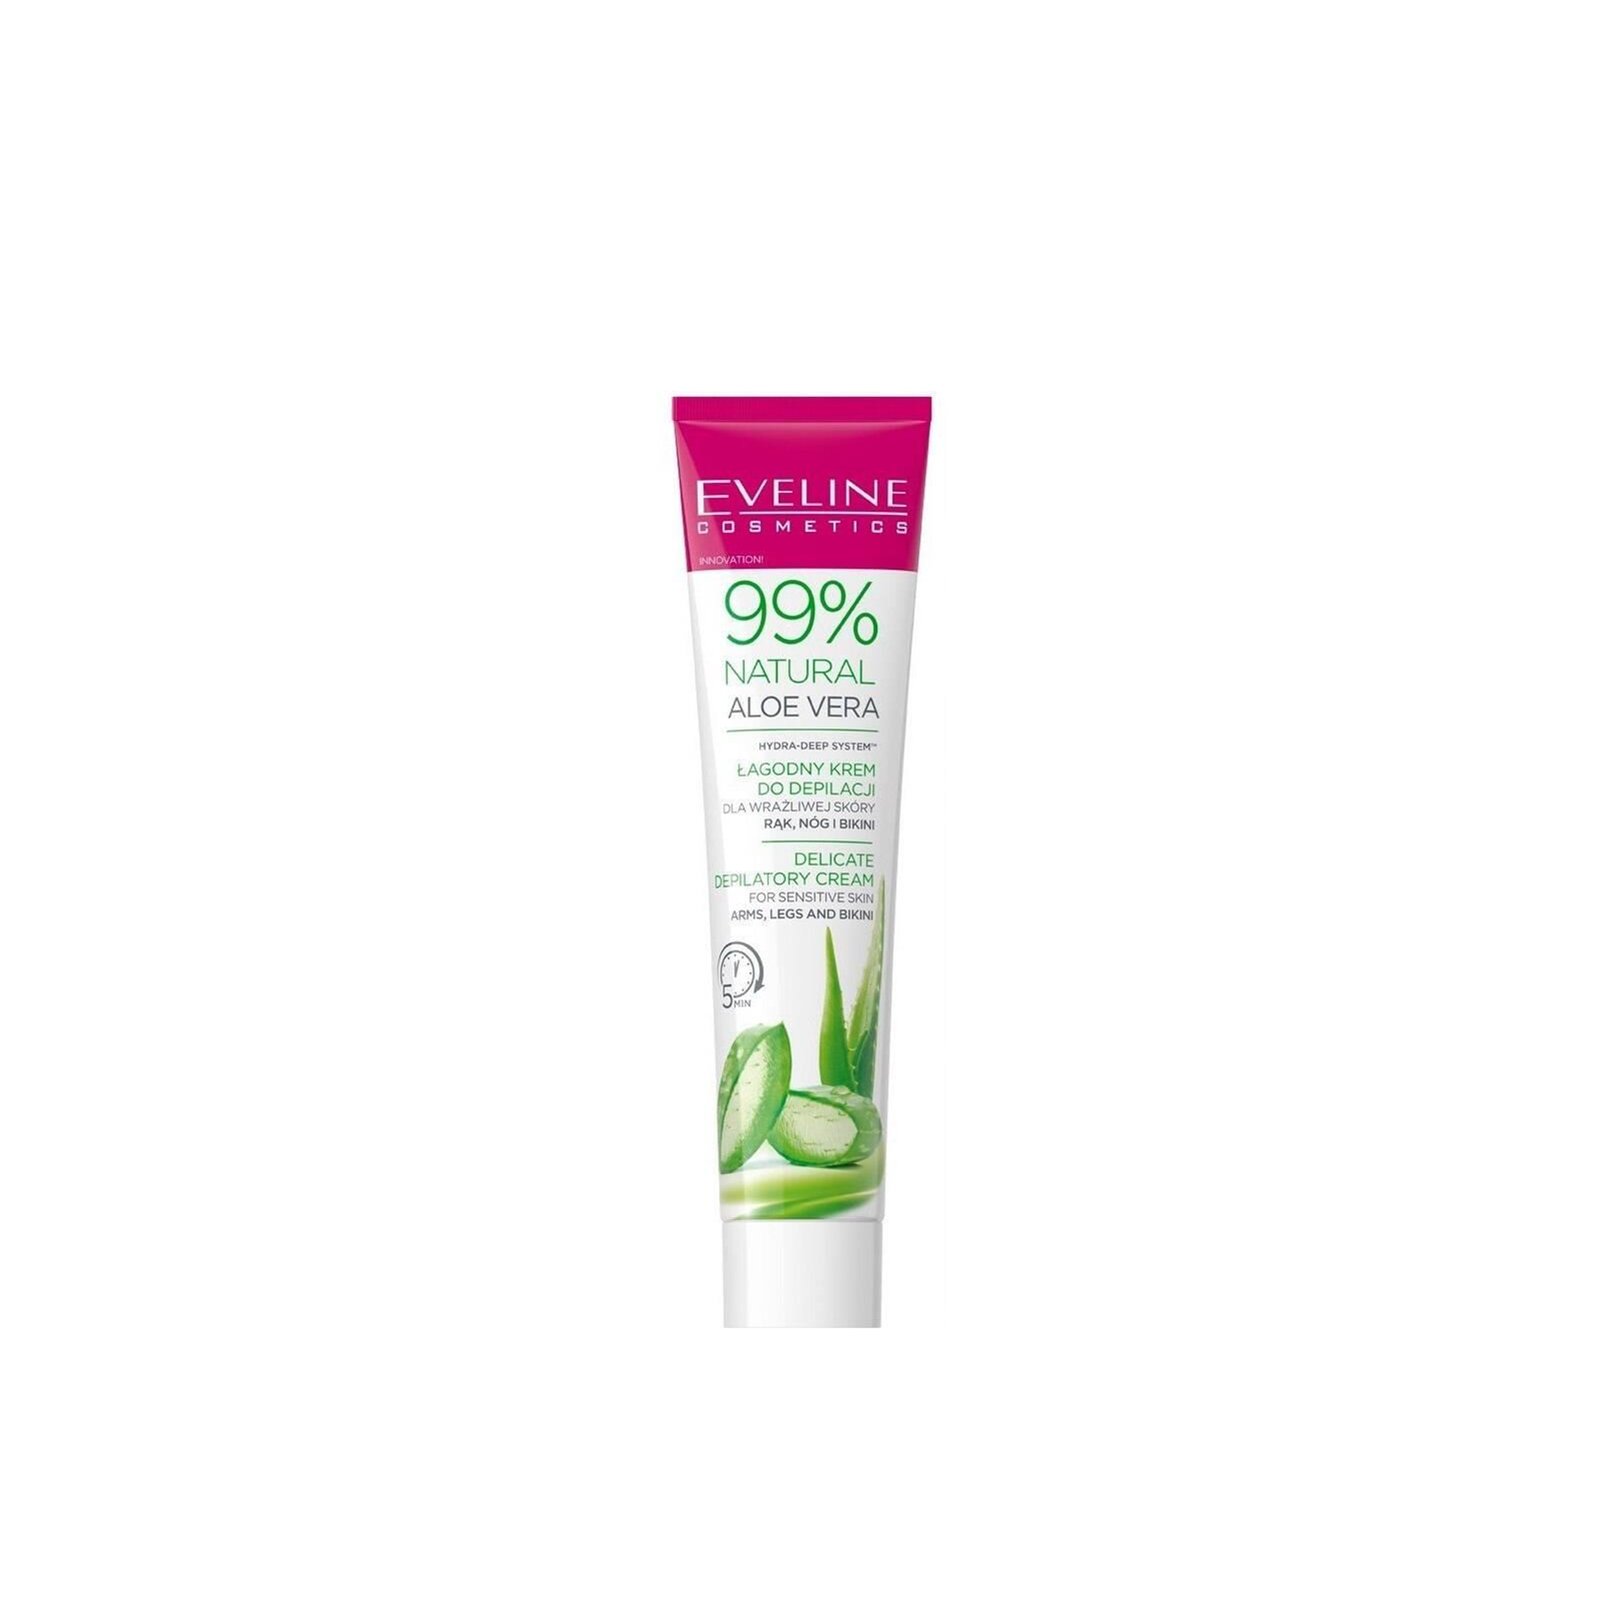 Eveline Cosmetics 99% Natural Aloe Vera Delicate Depilatory Cream 125ml